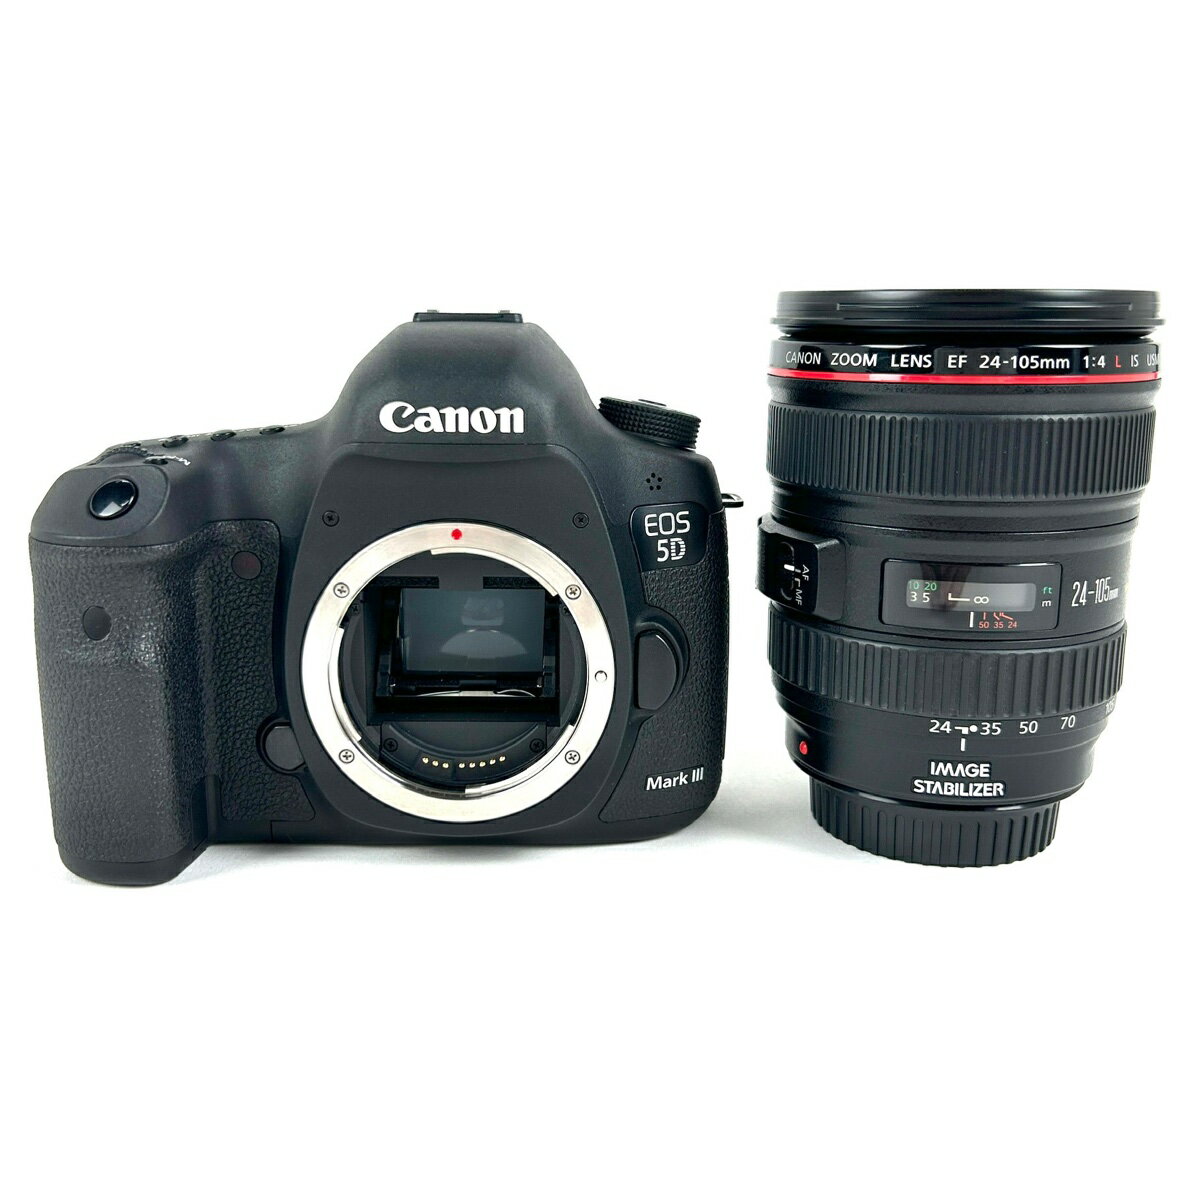 キヤノン Canon EOS 5D Mark III EF 24-105 F4L IS USM キット デジタル 一眼レフカメラ 【中古】